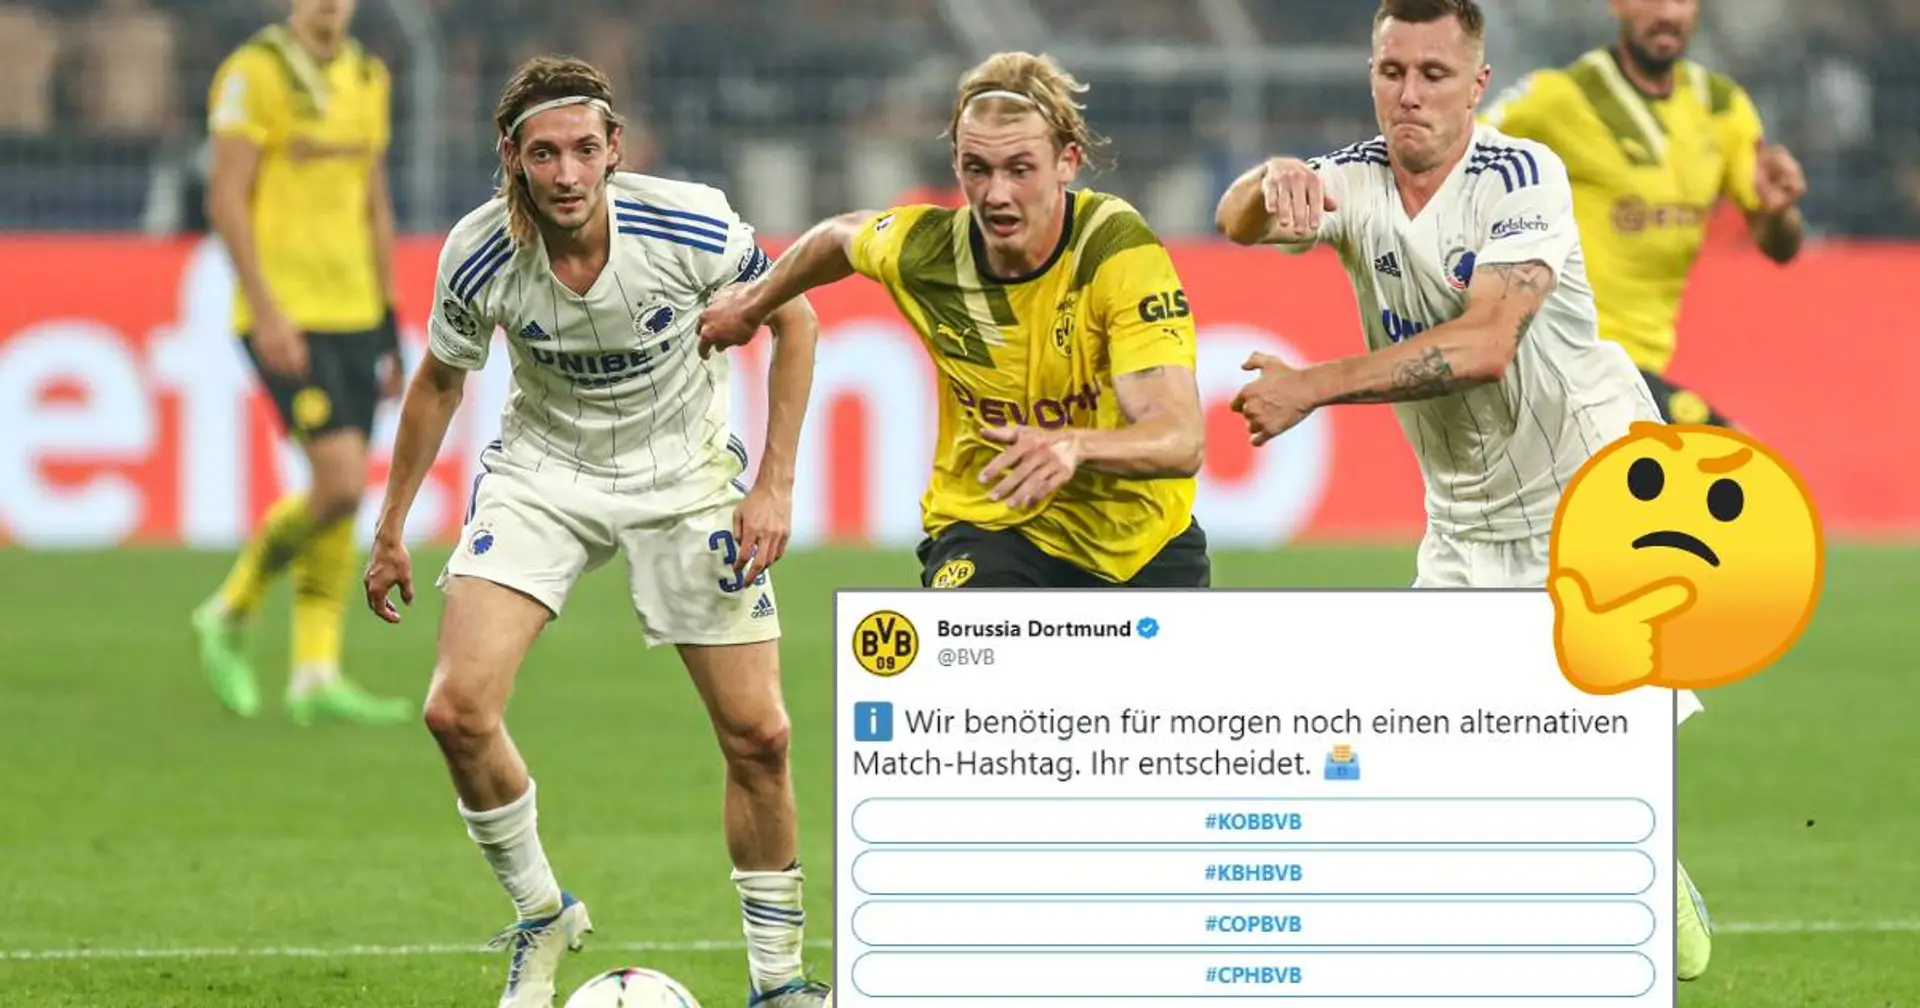 BVB sucht einen alternativen Match-Hashtag zum Spiel vs. Kopenhagen - aus welchem Grund?